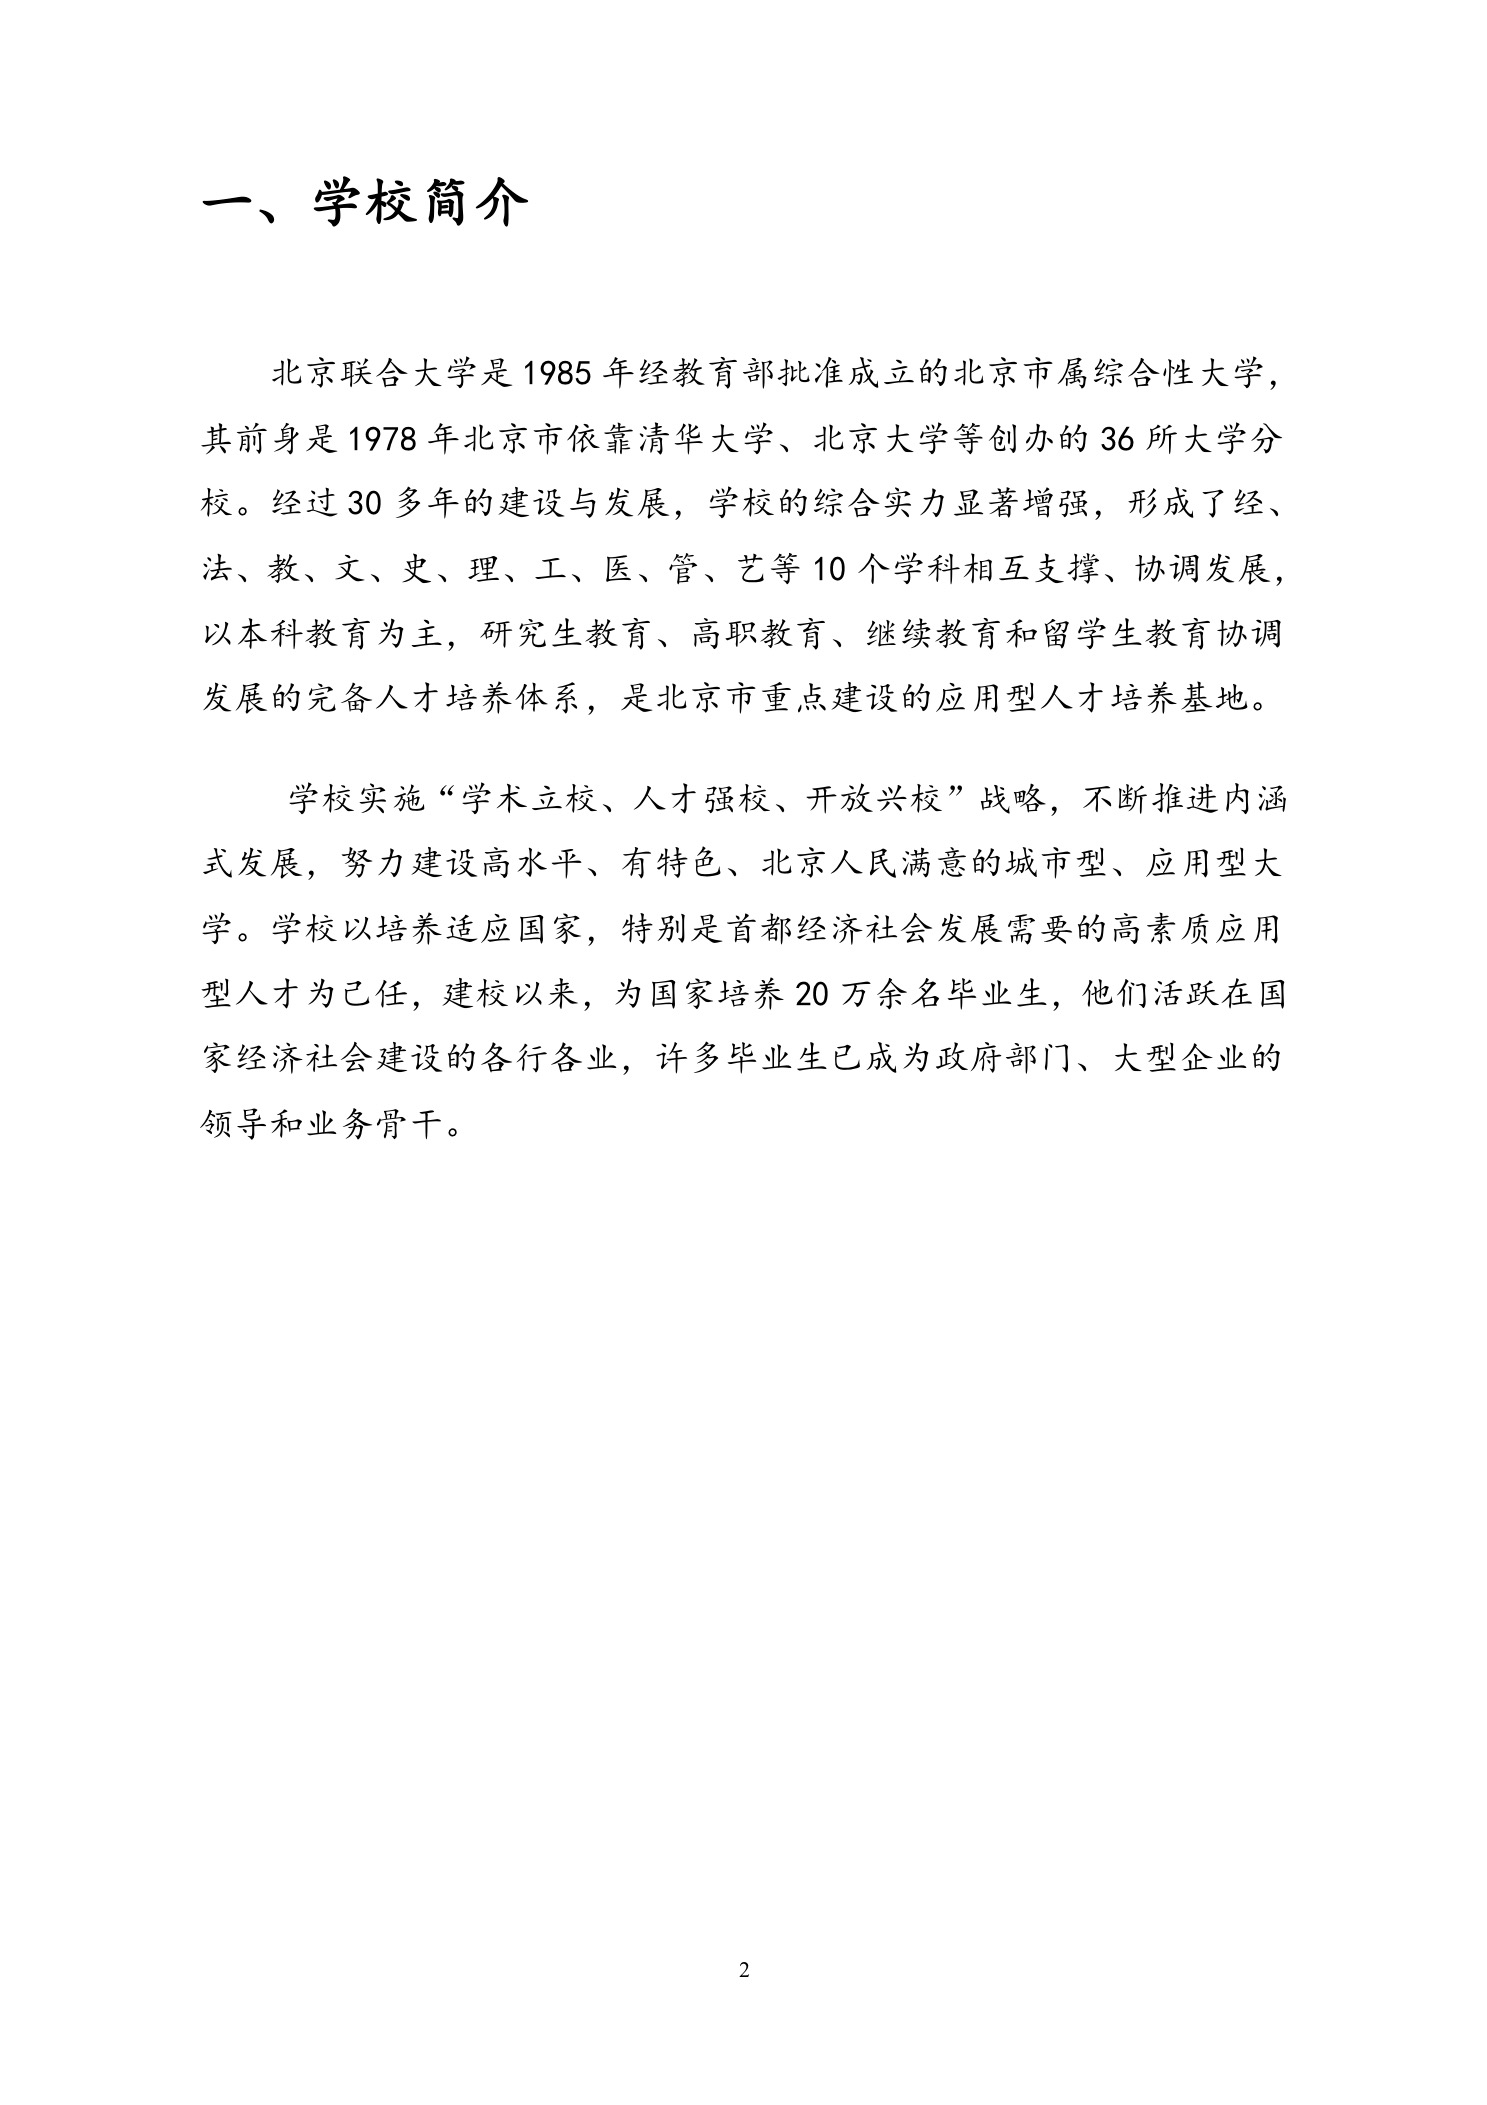 北京联合大学2018年艺术类招生简章20180103-page2 2.jpeg